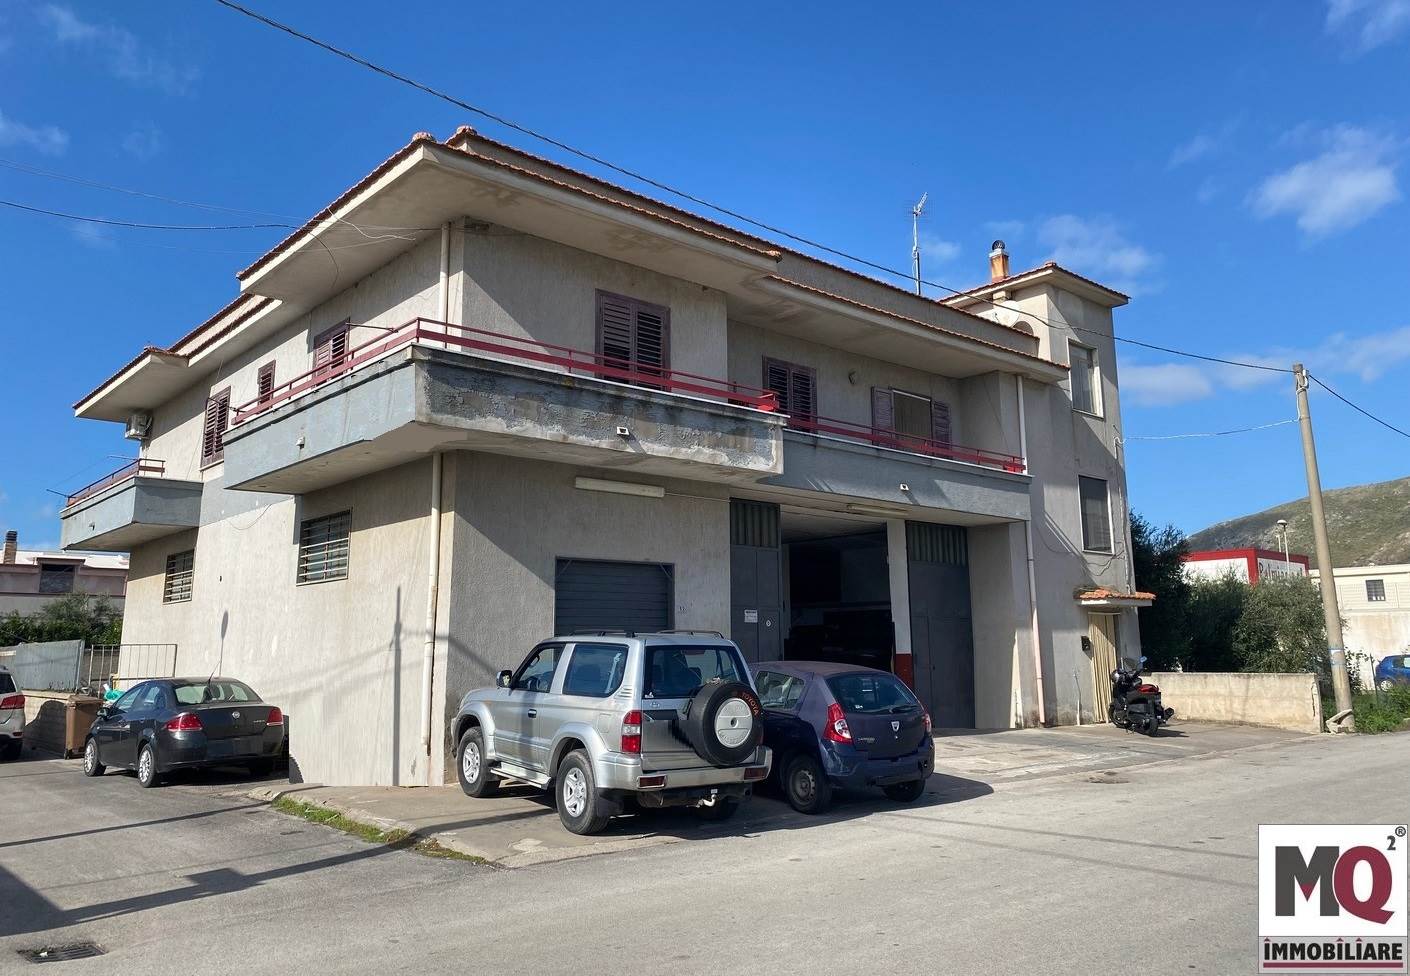 Negozio / Locale in vendita a Mondragone, 3 locali, zona Nicola, prezzo € 160.000 | PortaleAgenzieImmobiliari.it